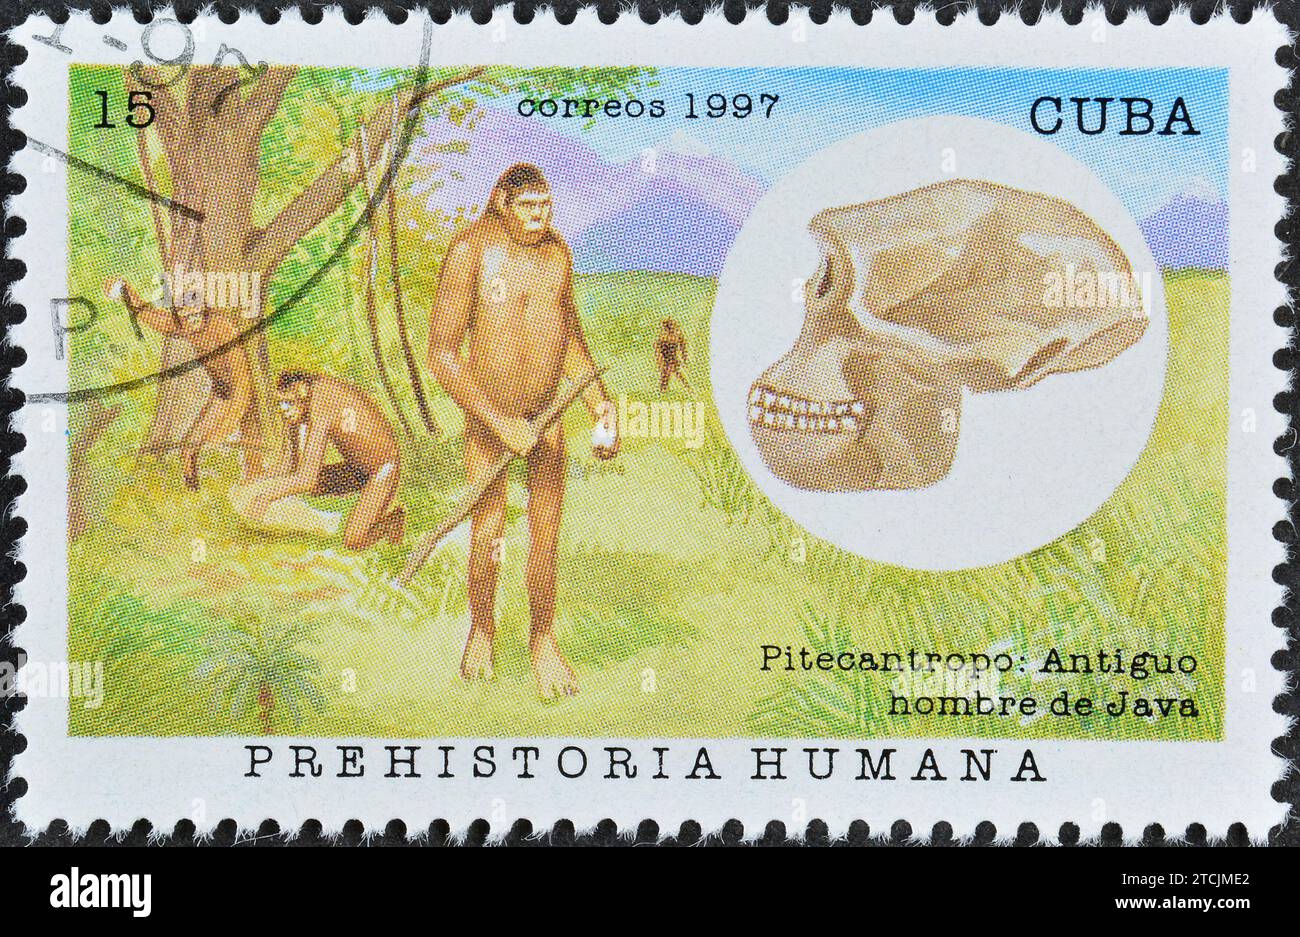 Francobollo cancellato stampato da Cuba, che mostra Pithecanthropus (uomo di Java), Hominids, circa 1997. Foto Stock